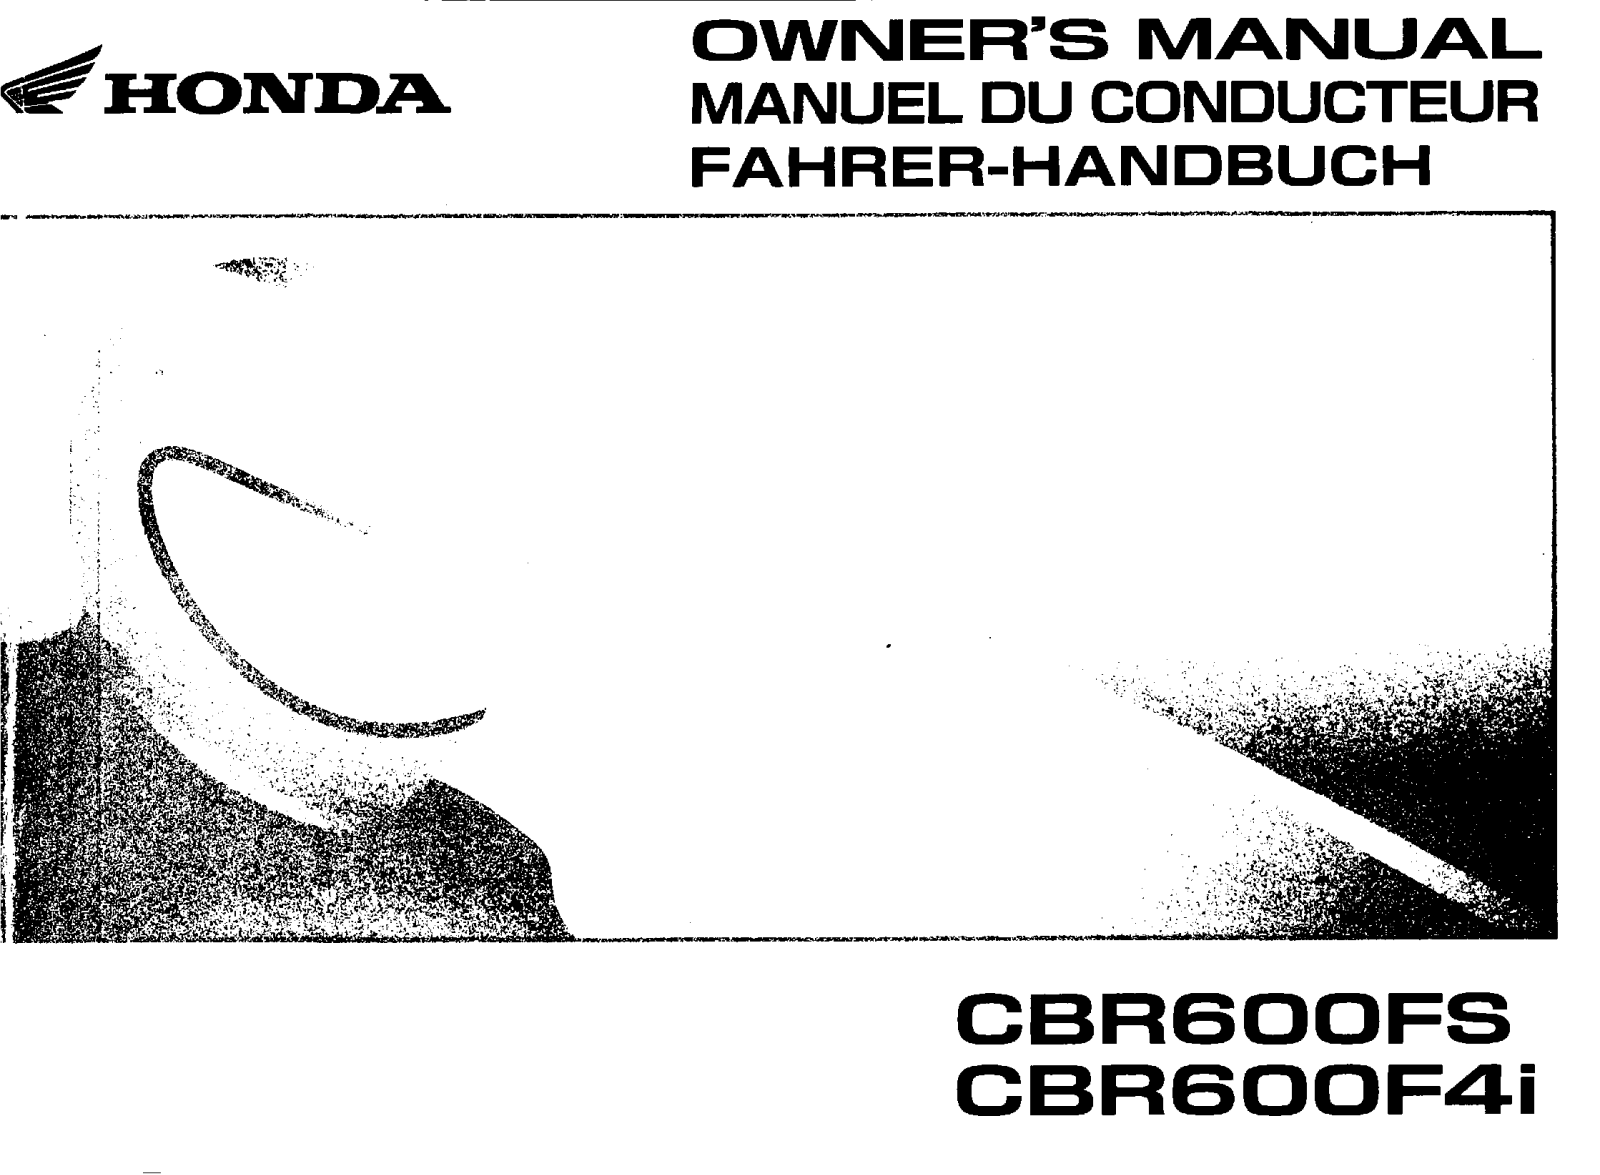 Honda CBR600FS, CBR600F4I Owner's Manual